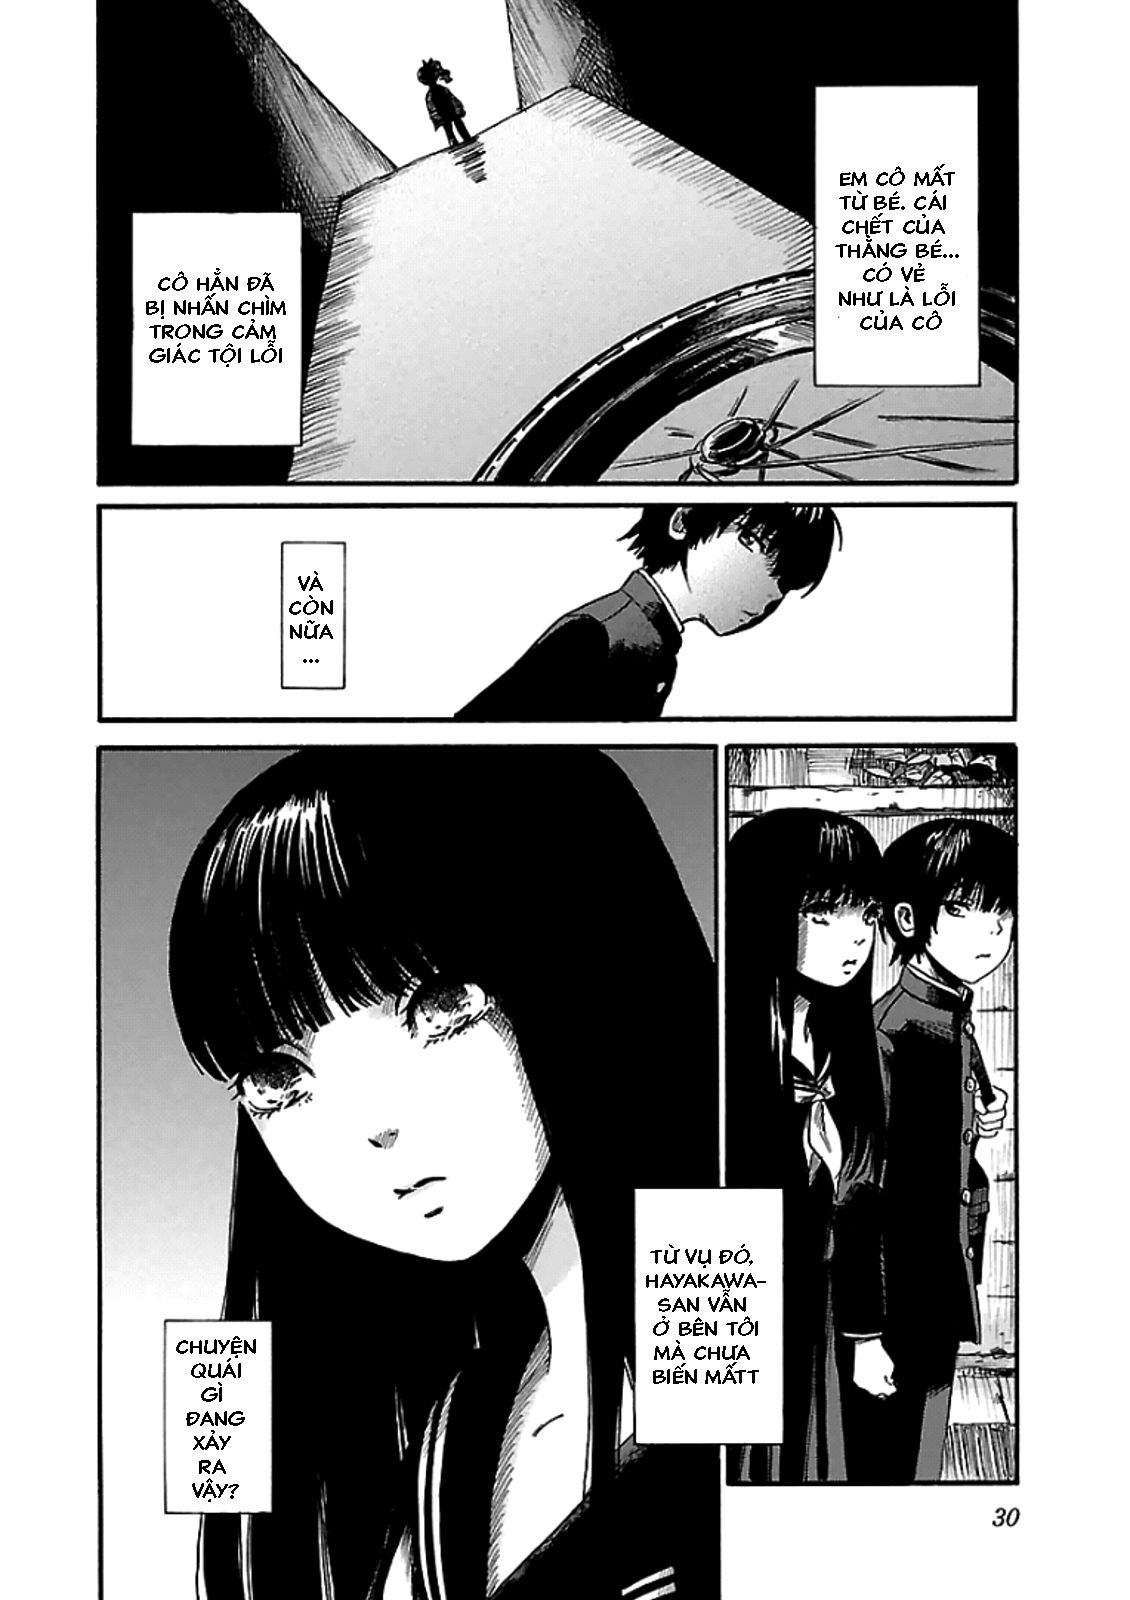 [Chapter 1] Sự biến mất của Ryoko Hayakawa ảnh 27